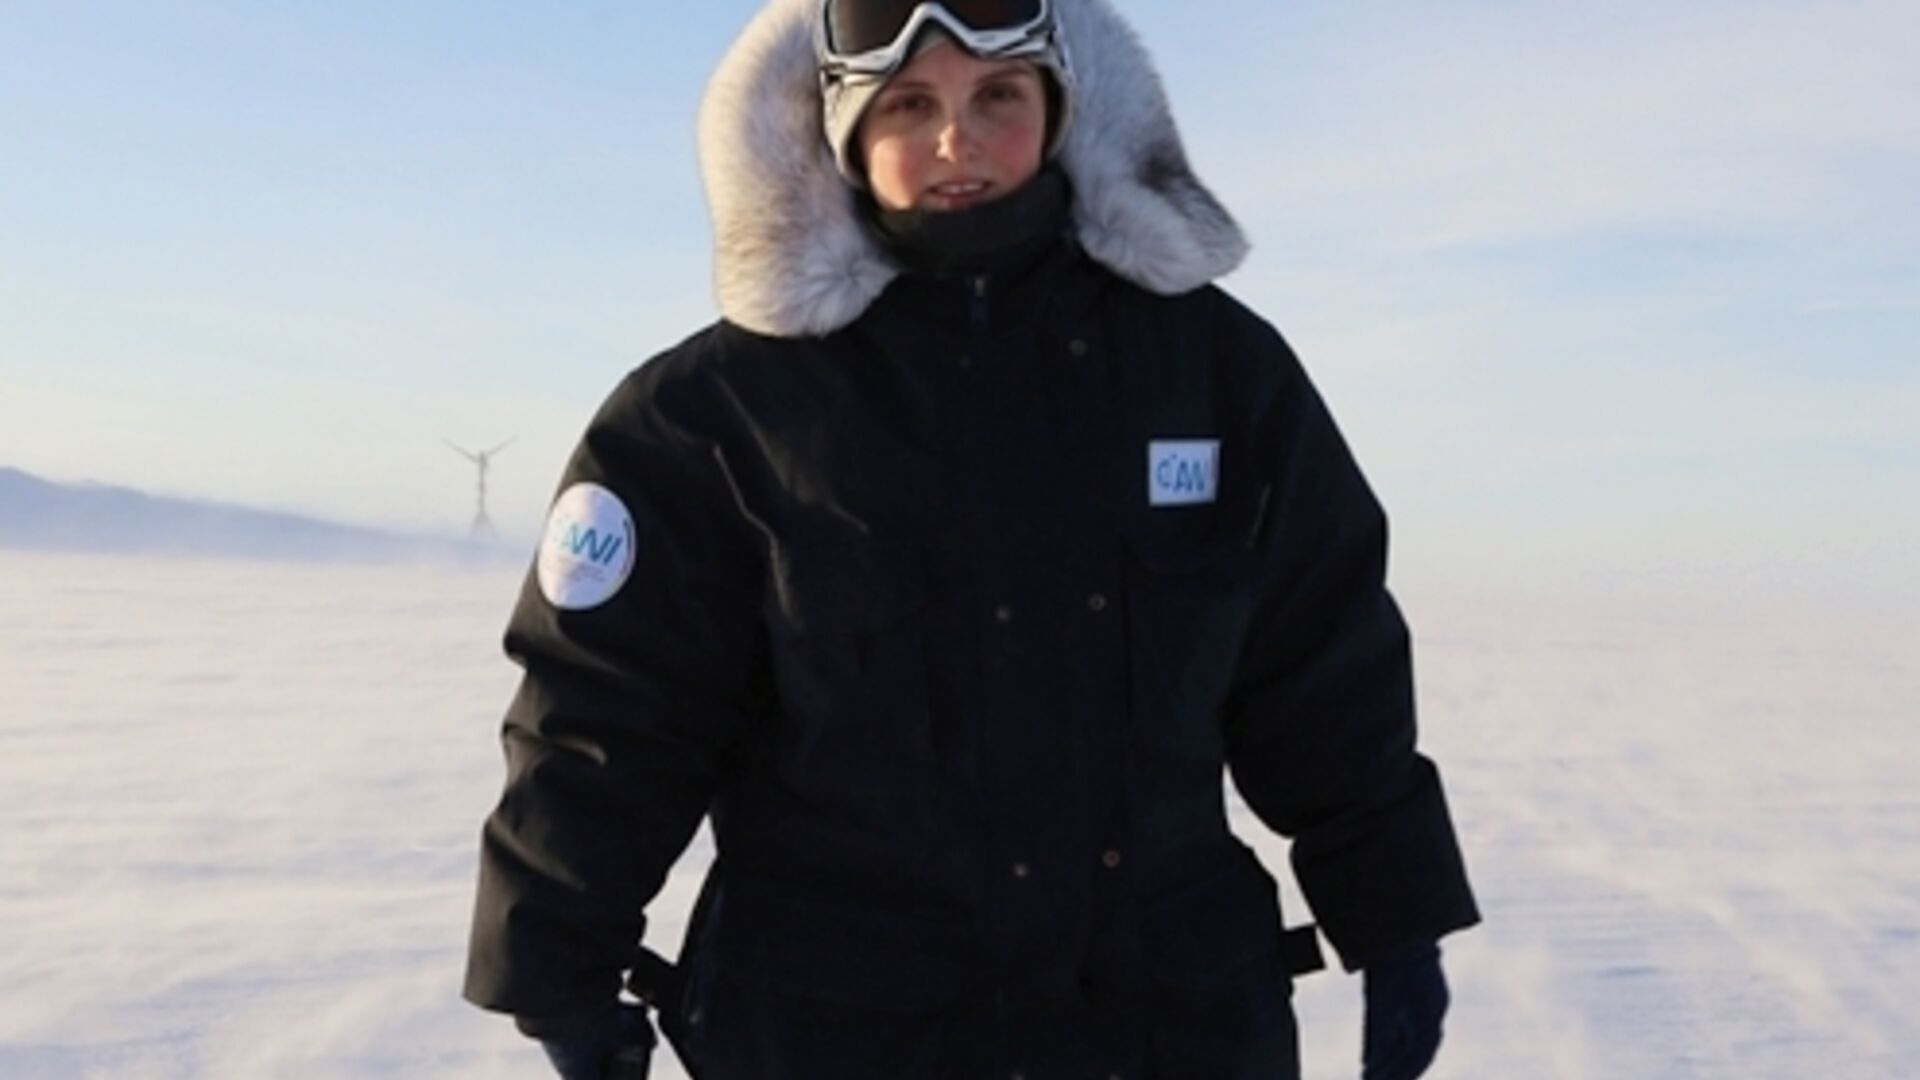 Хуванцар судлалын хээрийн судалгаа: Хойд туйлын судлаач, Хохер Соннблик уулын ажиглалтын төвийн дарга Элке Людвиг багийнхаа хамтаар нанопластик дээж цуглуулсан: Авьяаслаг судлаач өмнө нь Антарктидын Германы Полярис судалгааны станцад ажиллаж байсан.